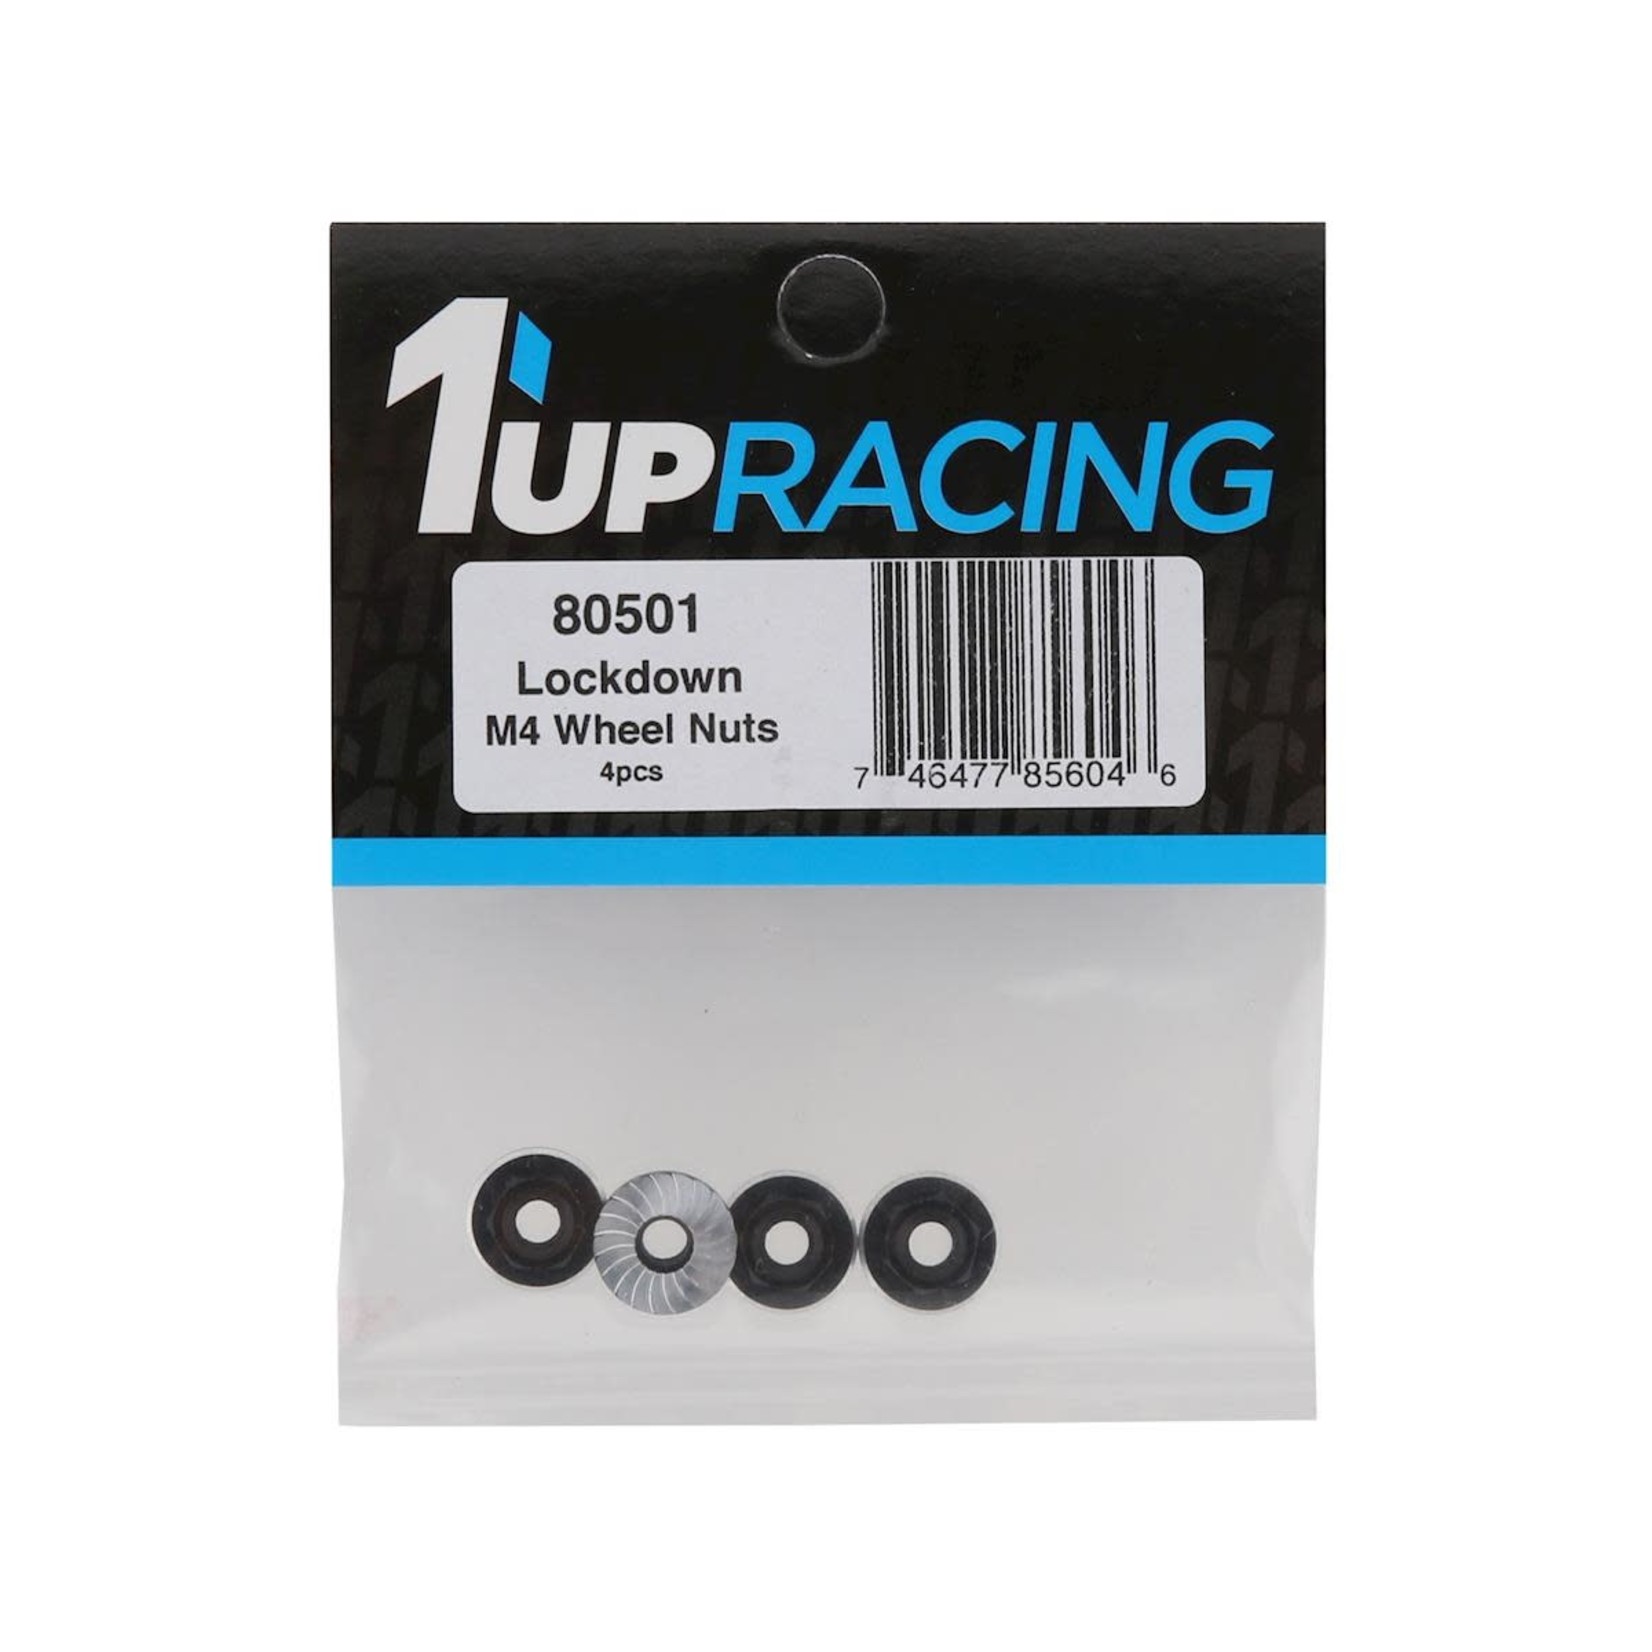 1UP Racing 1UP Racing Lockdown UltraLite 4mm Serrated Wheel Nuts (Black) (4) #80501